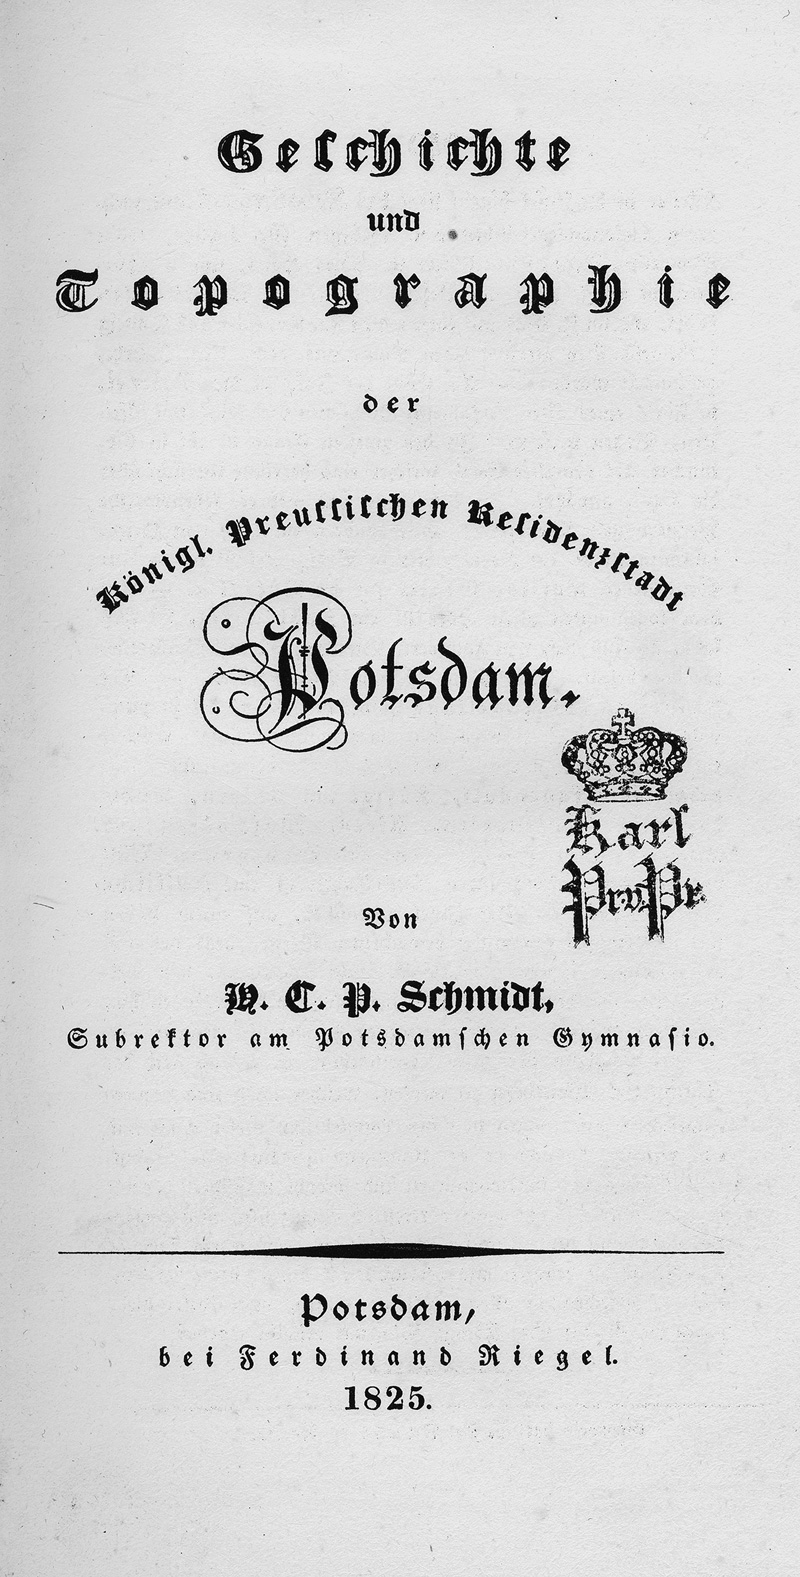 Lot 257, Auction  123, Schmidt, H. C. P., Geschichte und Topographie der Residenzstadt Potsdam